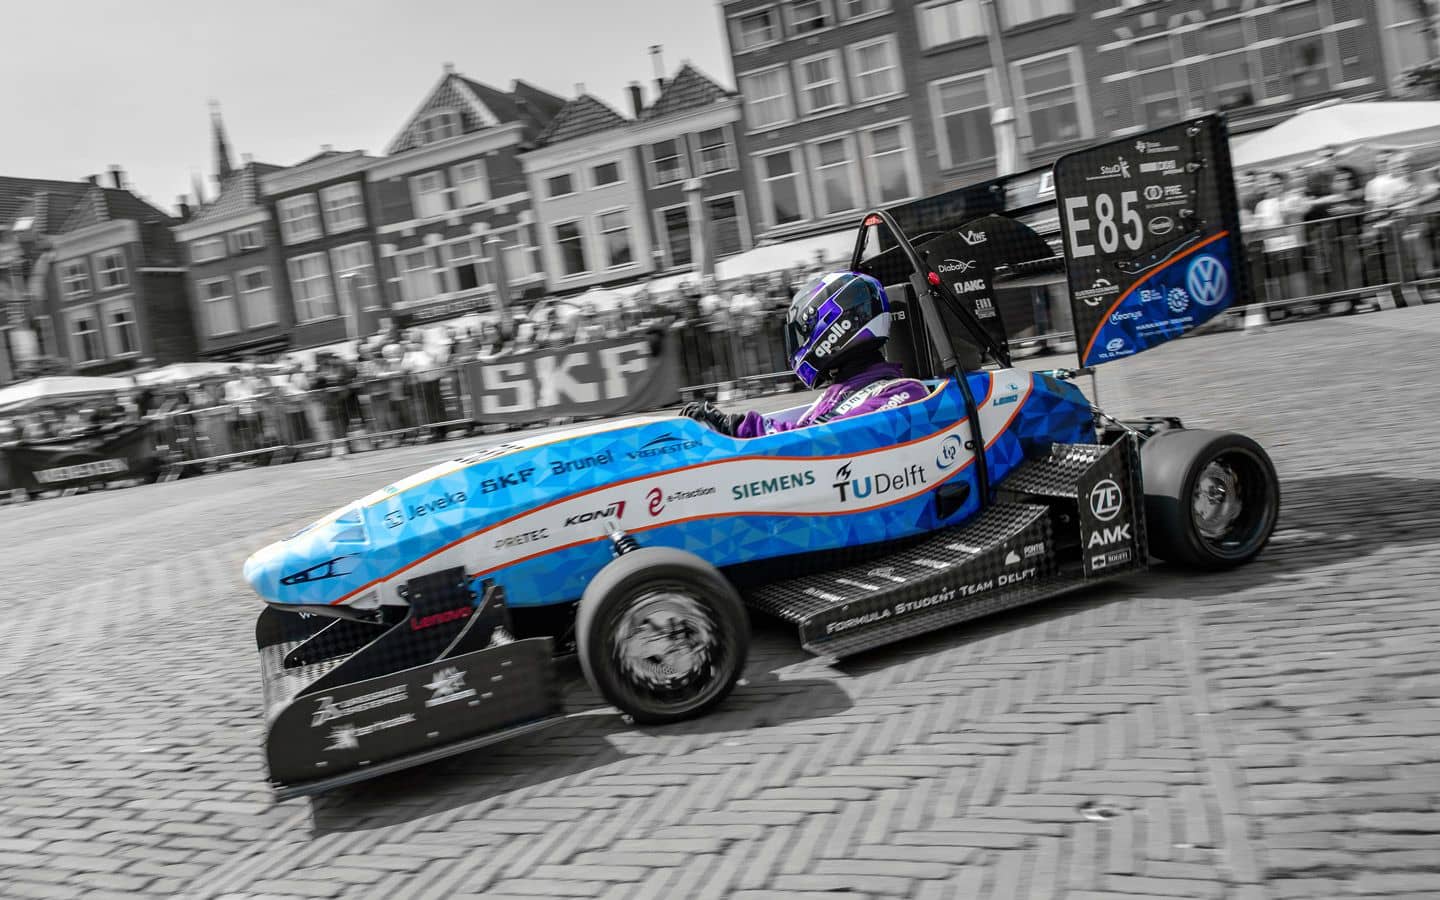 Image of a Formula Student Team Delft racing car